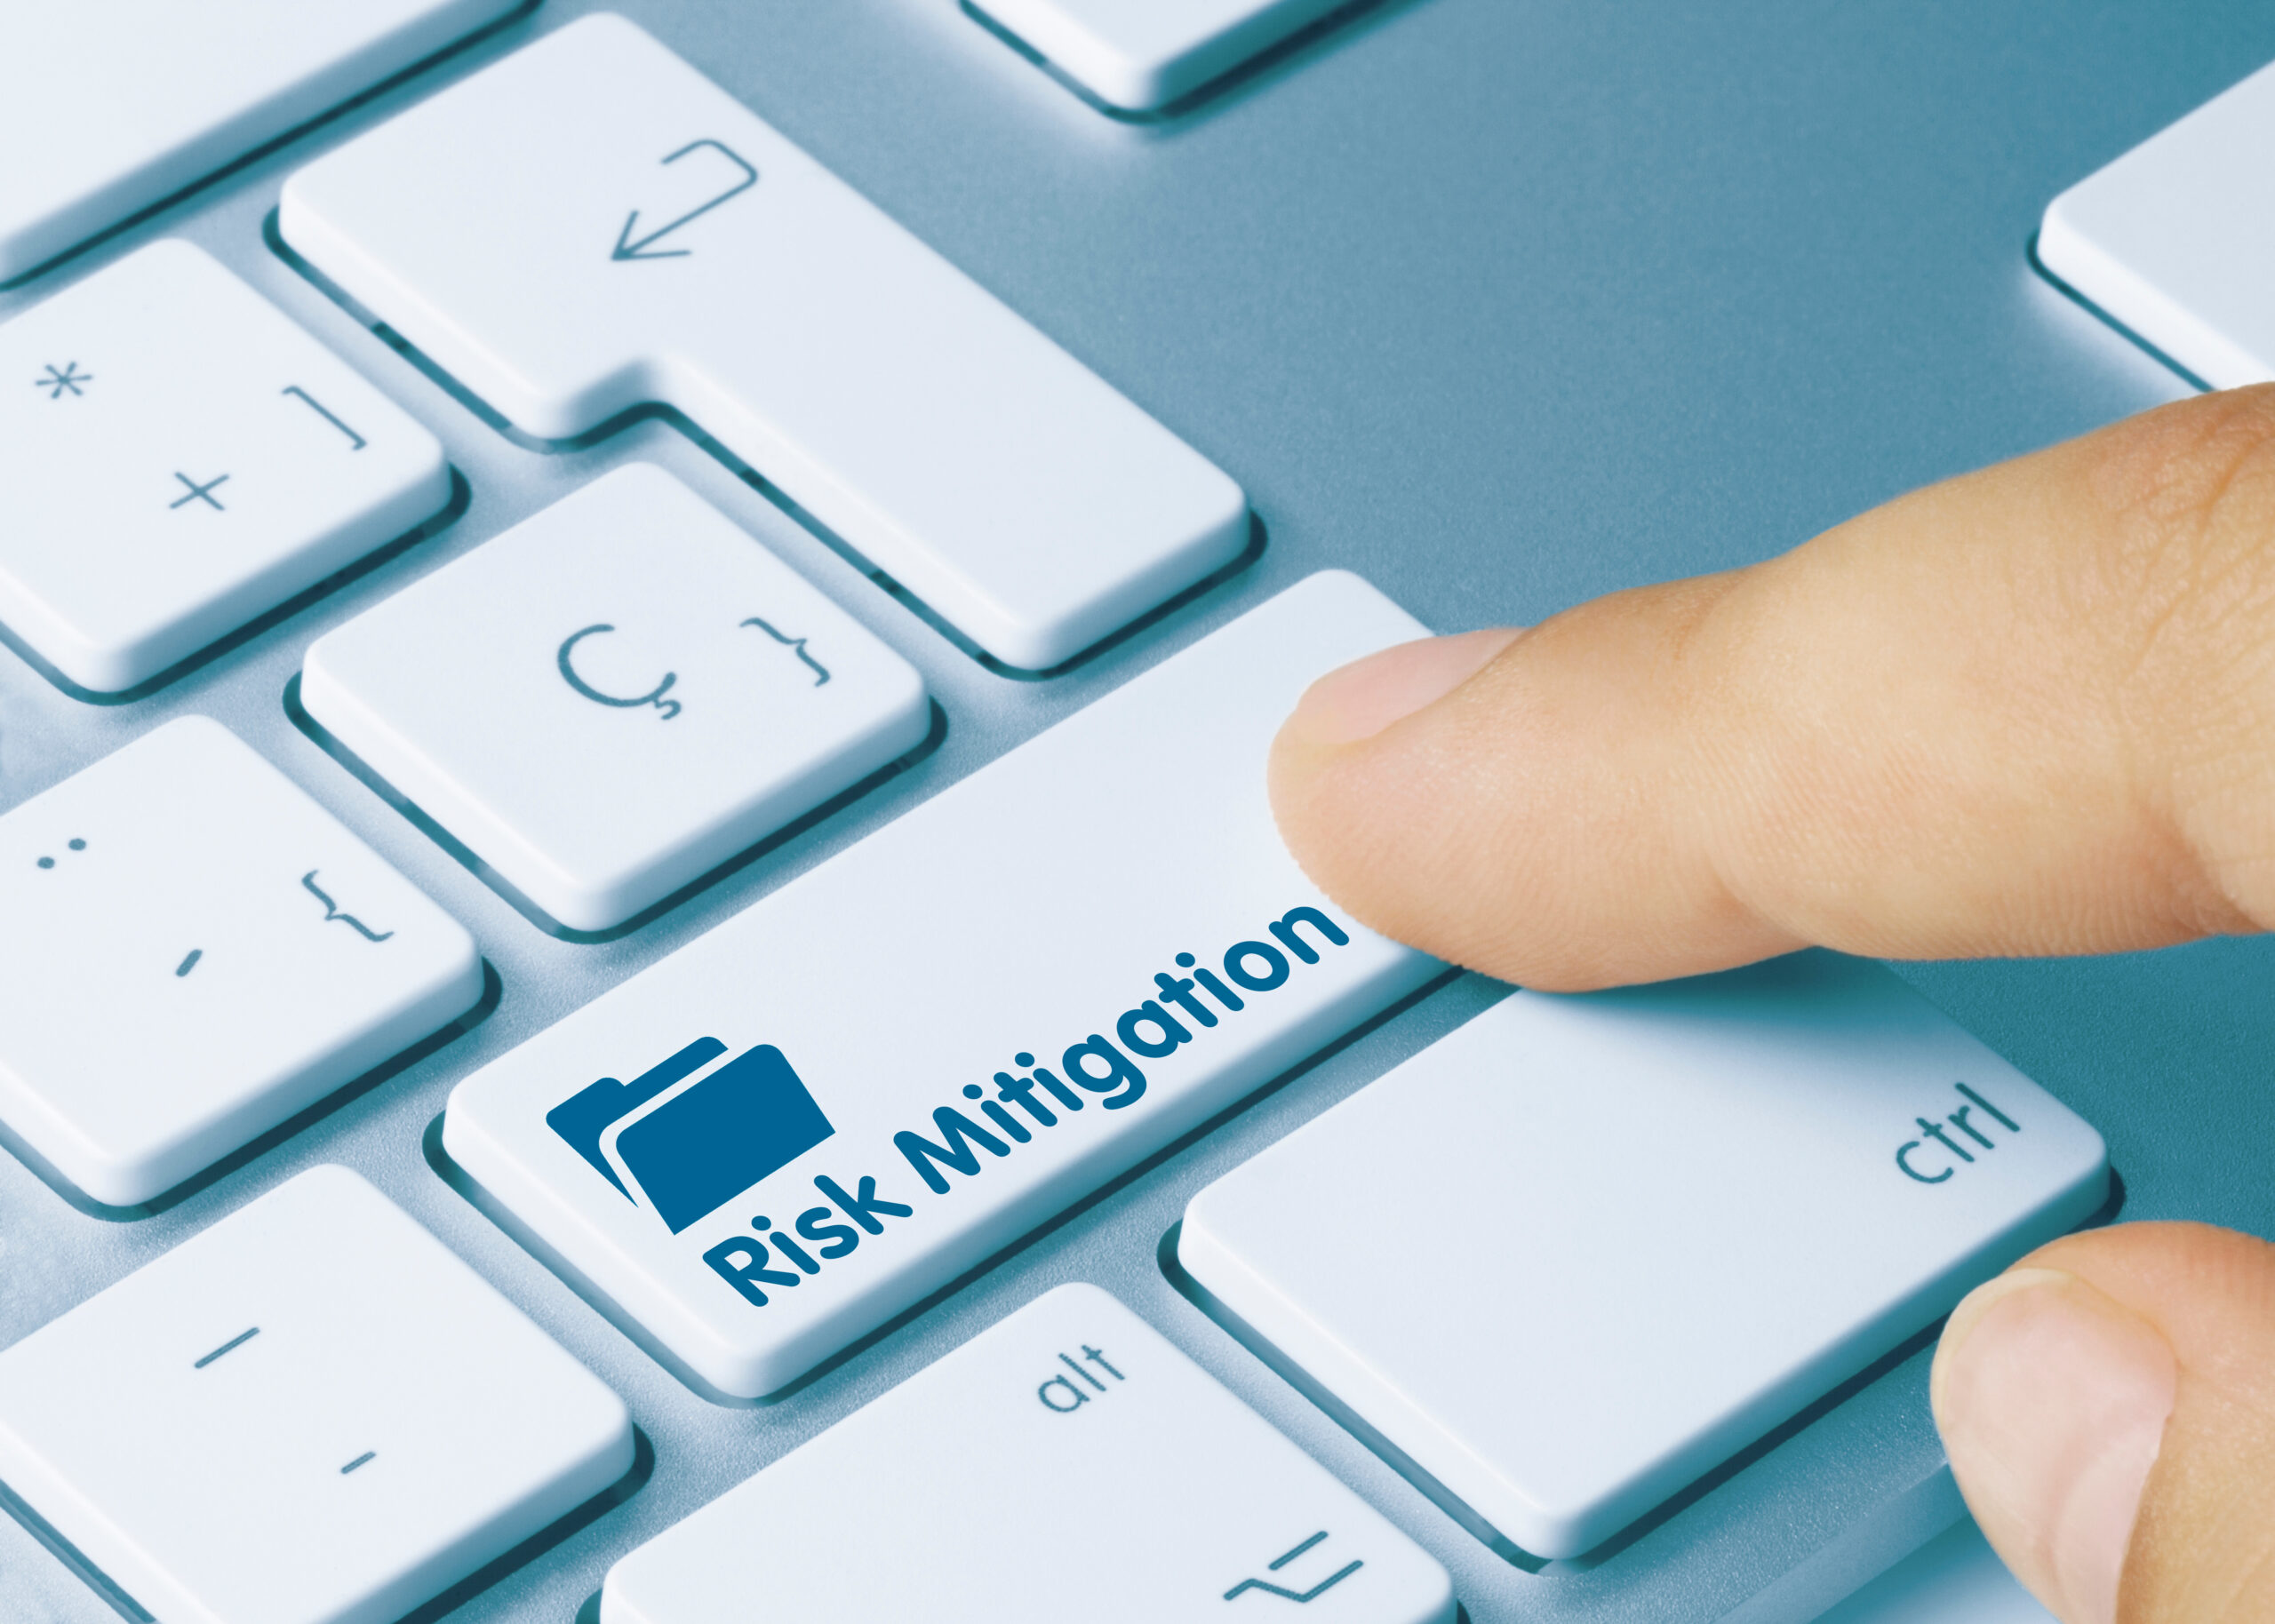 Risk mitigation risk reduction risk elimination